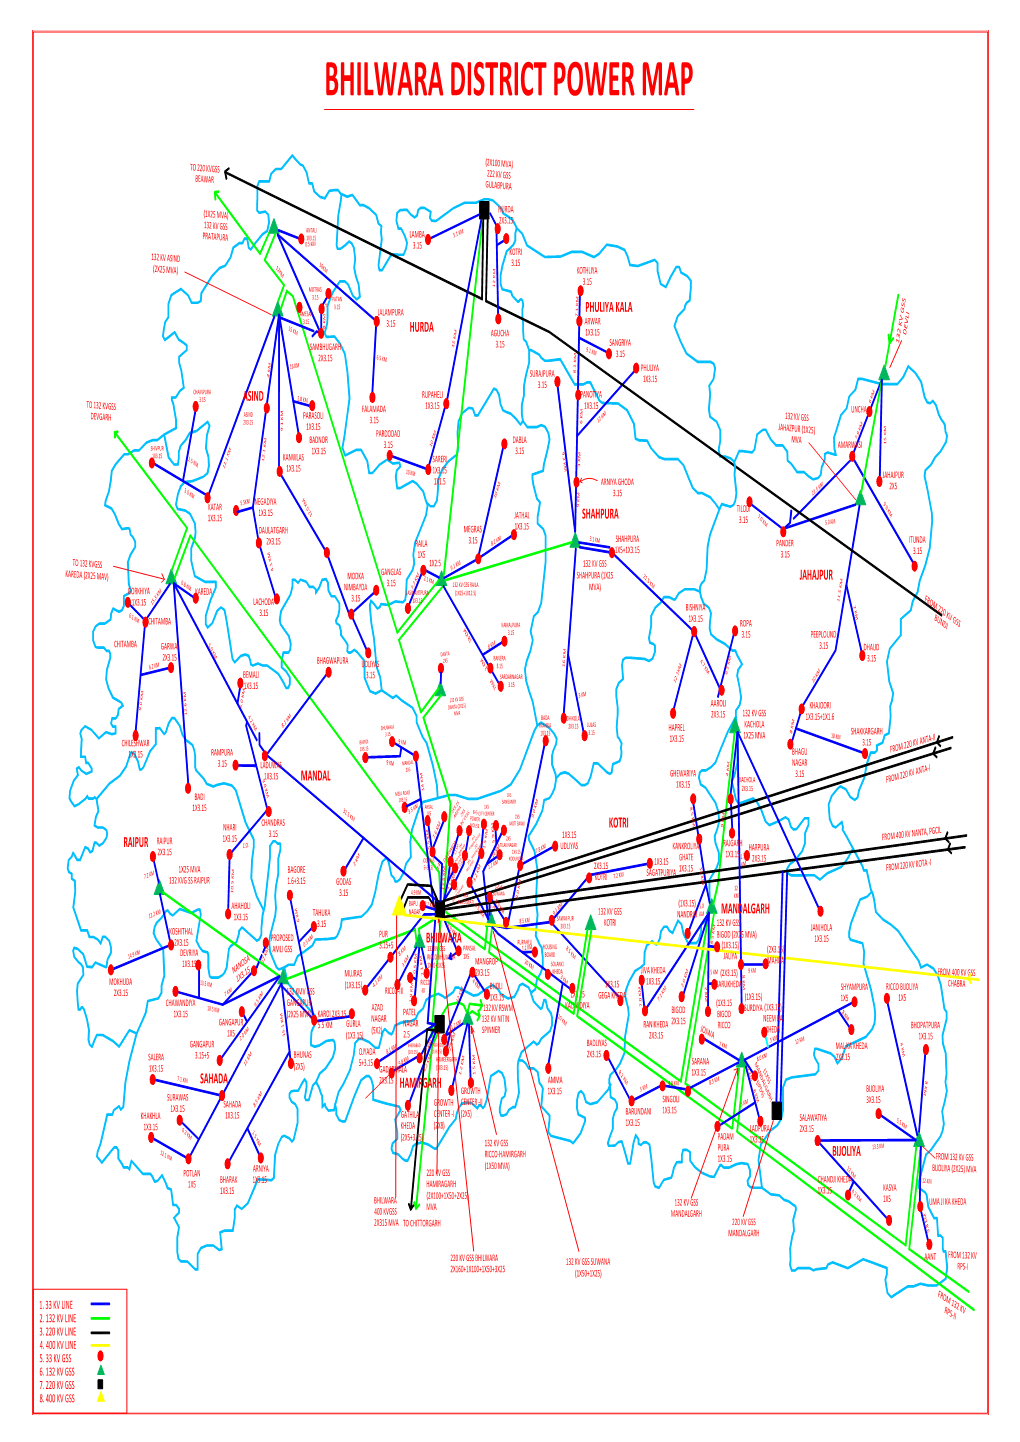 Bhilwara District Power Map